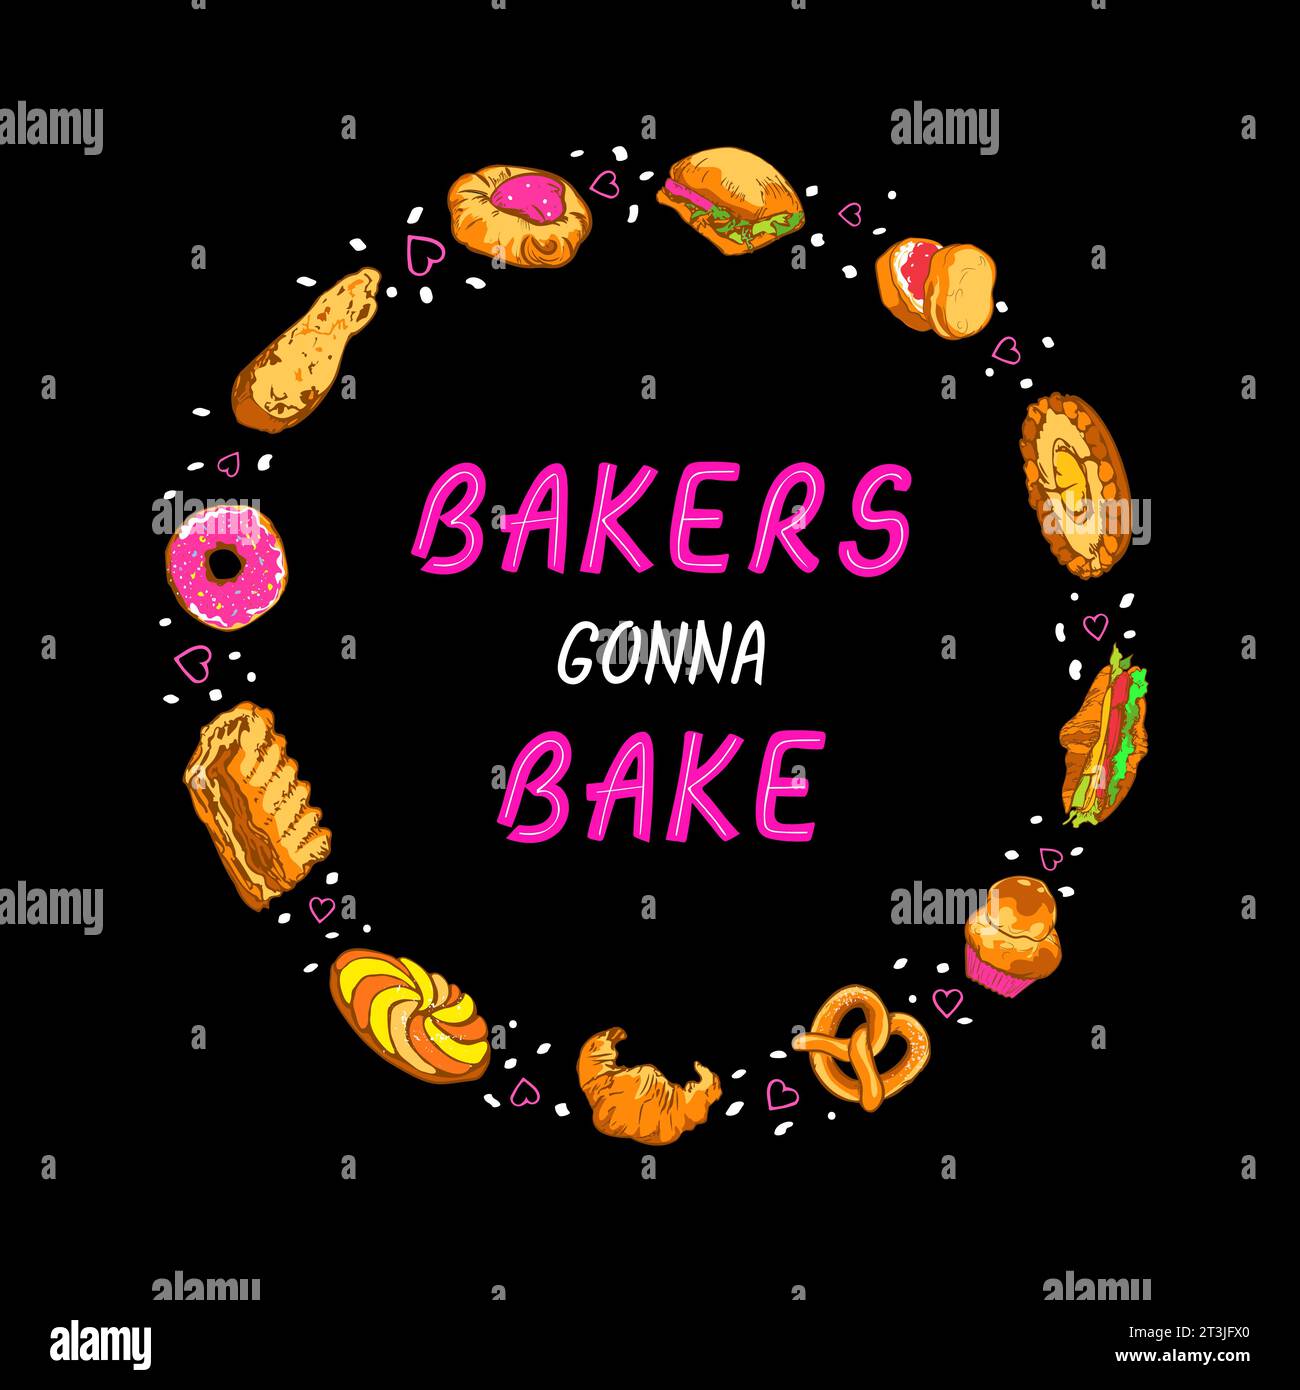 Humoristique mignon message de lettrage de motivation Bakers Gonna Bake dans un cadre rond fait d'articles de boulangerie Illustration de Vecteur